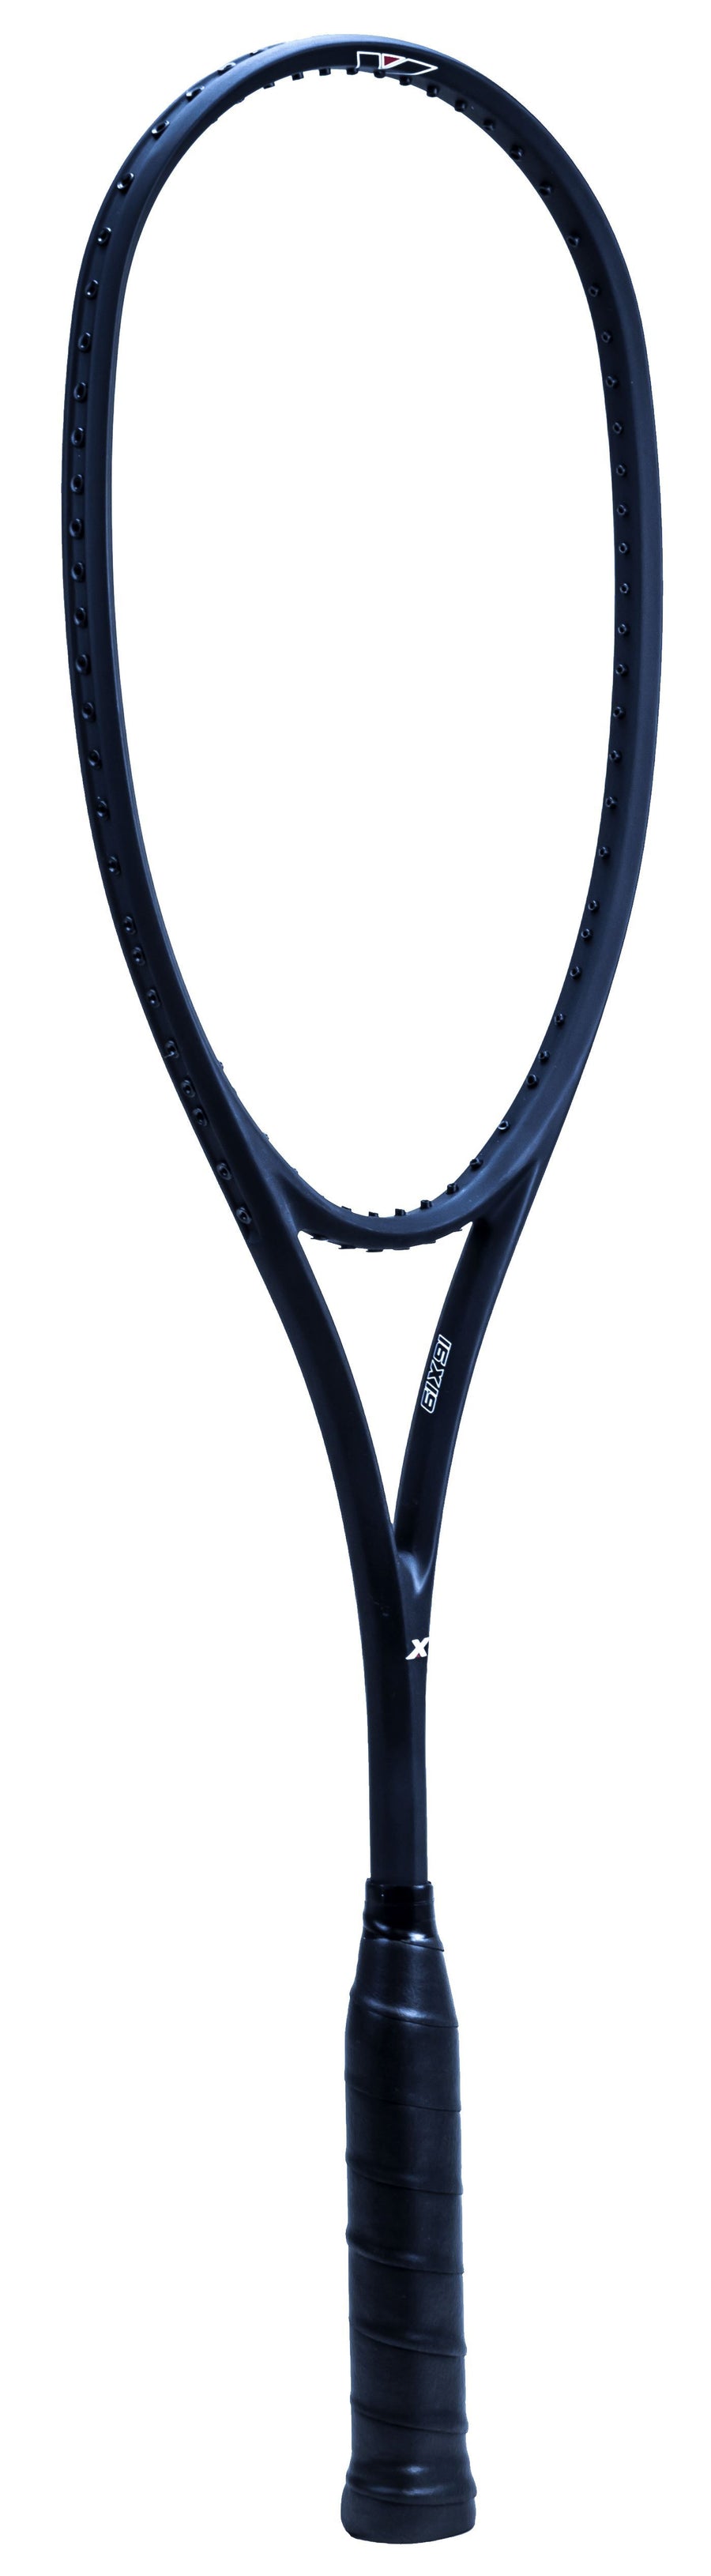 Xamsa Obsidian eXposed 16x19 Squash Racquet Squash Racquets Xamsa No Strings 